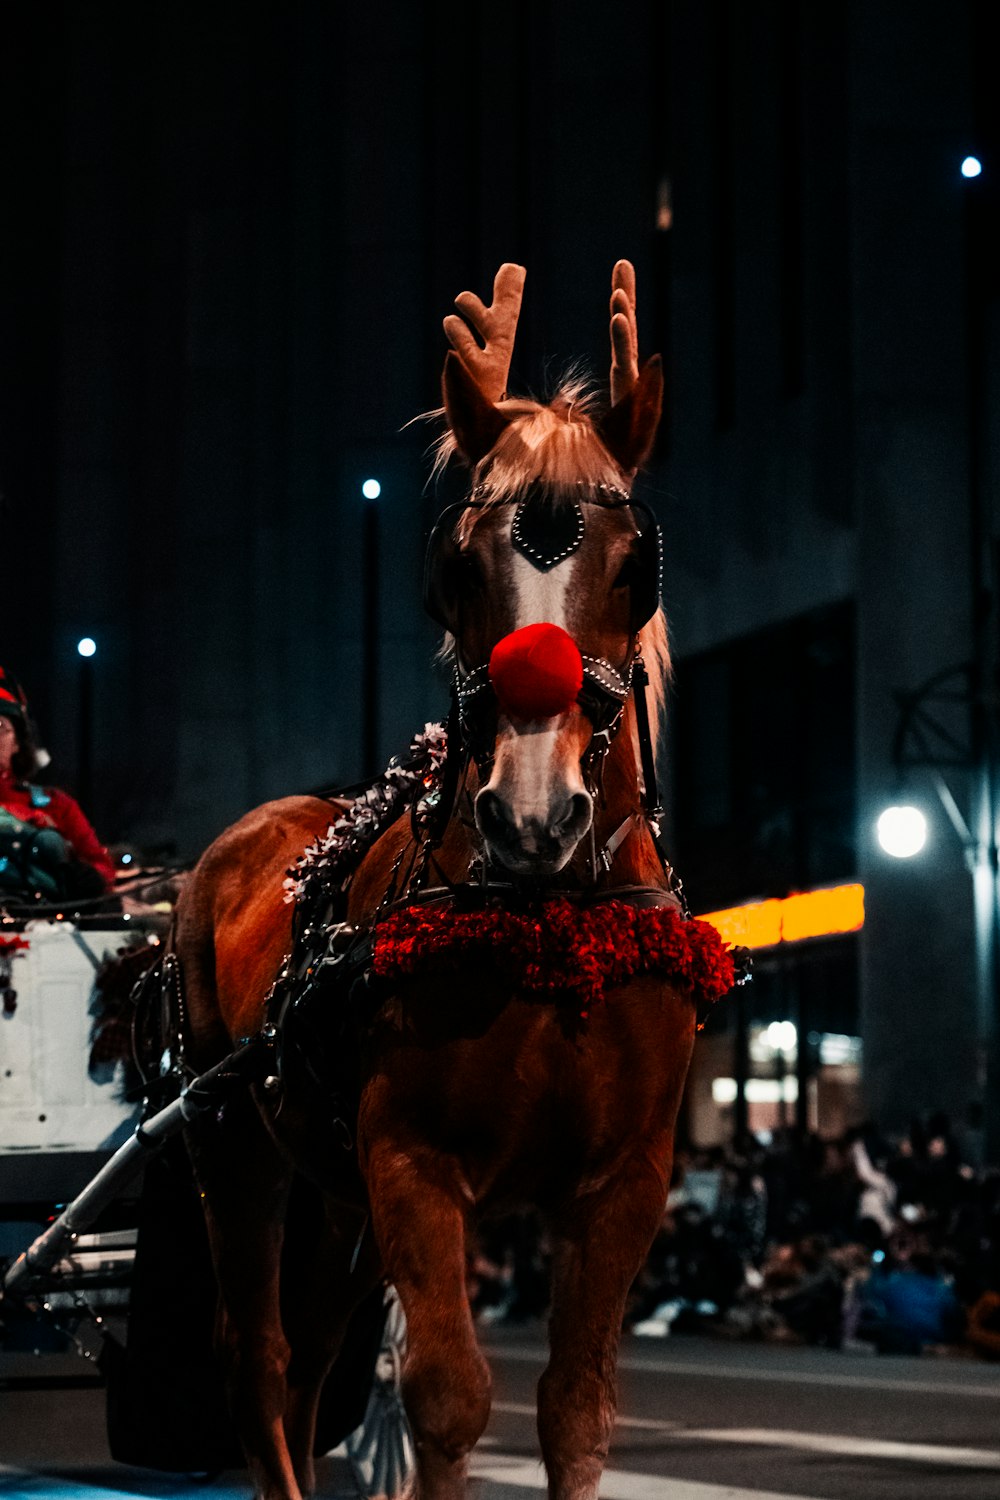 Un cheval tirant une calèche dans une rue